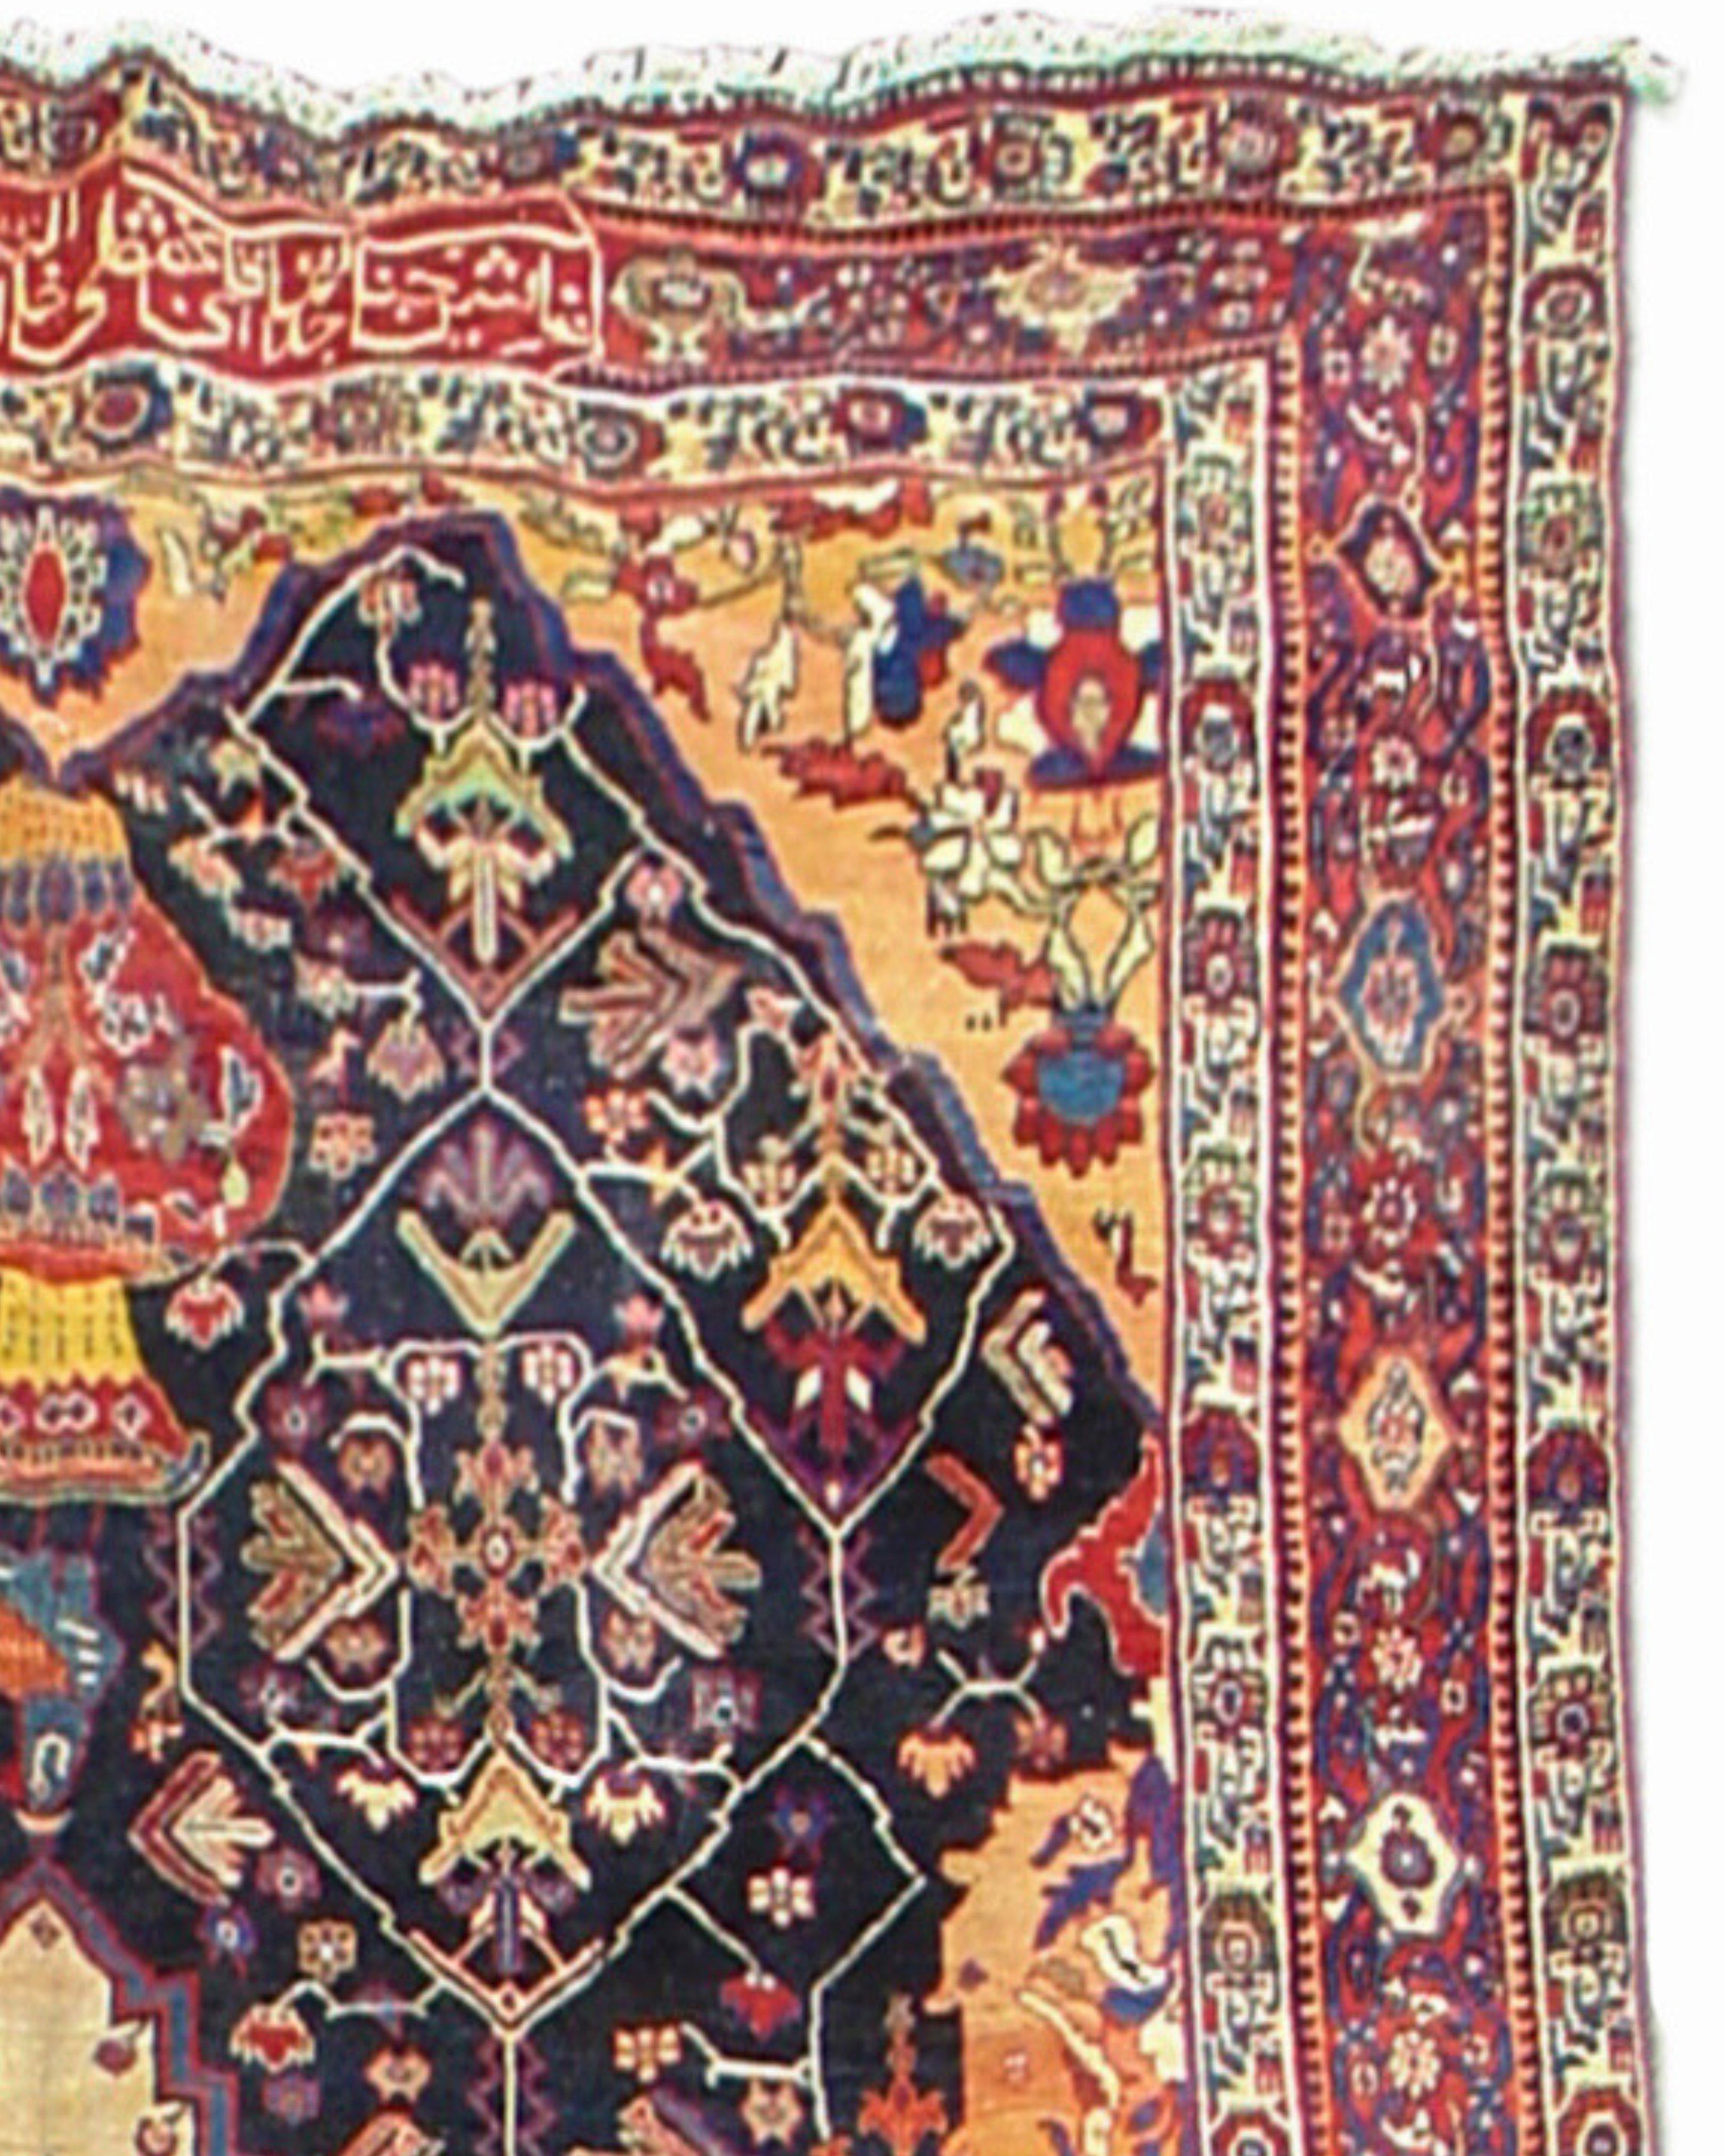 Antiker persischer Bachtiari-Teppich, frühes 20. Jahrhundert

Die persische Schrift in der oberen Mitte dieses Bachtiari-Teppichs weist darauf hin, dass der Teppich als Sonderbestellung für einen Regierungsbeamten gefertigt wurde. Das Wort farmayesh